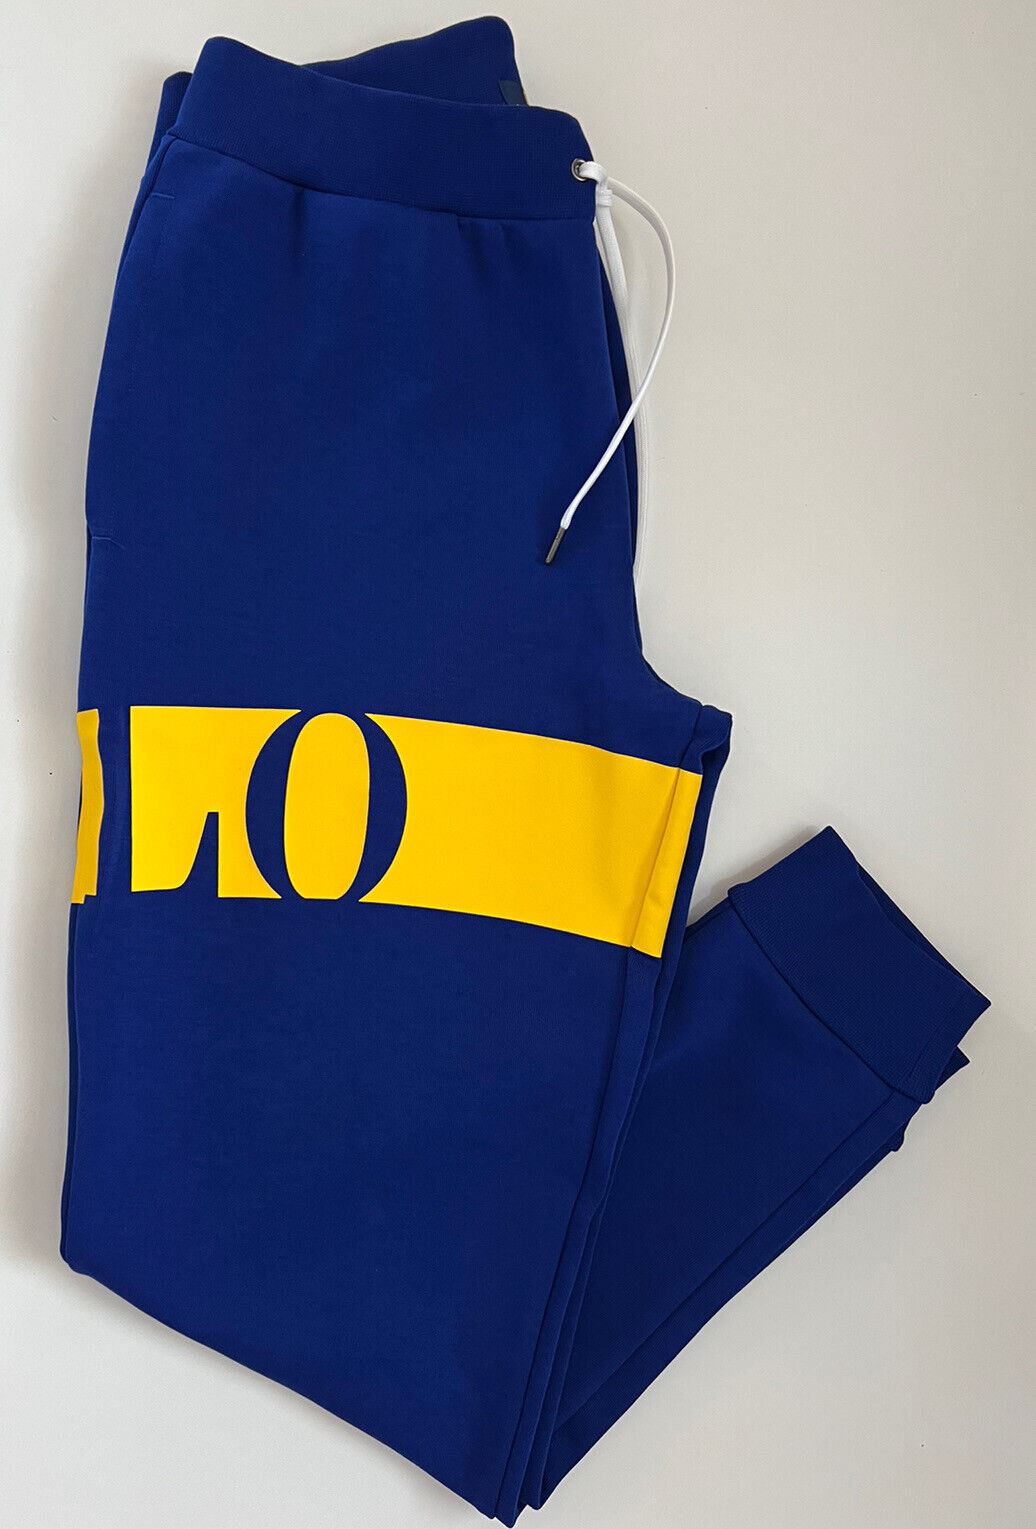 Neu mit Etikett: Polo Ralph Lauren Jungen-Freizeithose mit großem Polo-Logo in Blau, Größe L